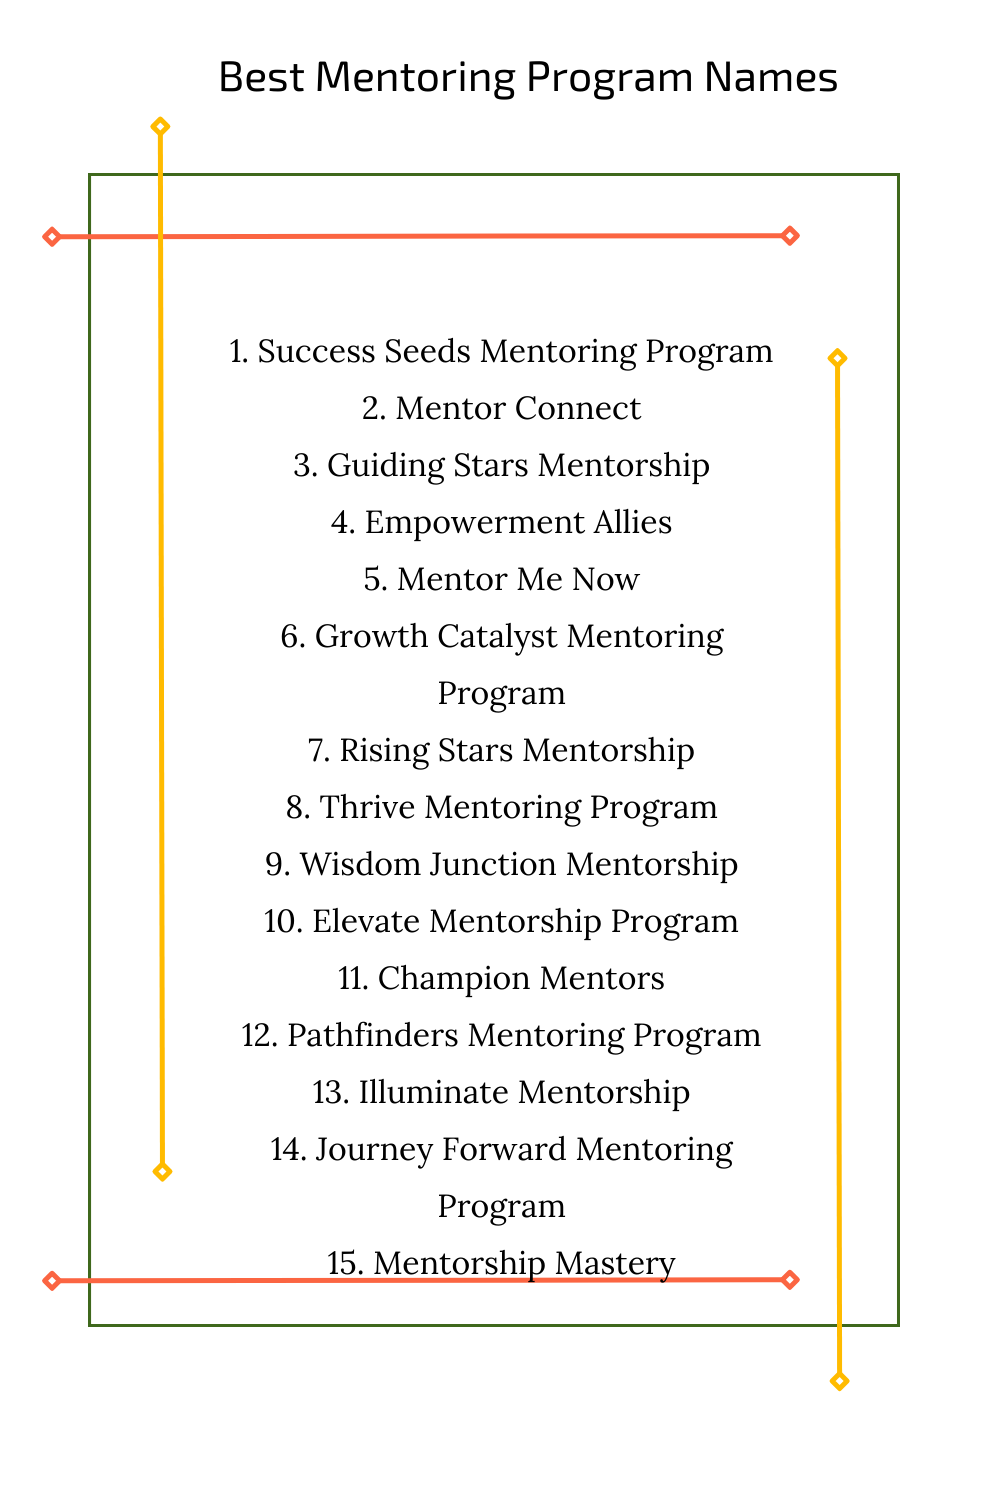 Best Mentoring Program Names